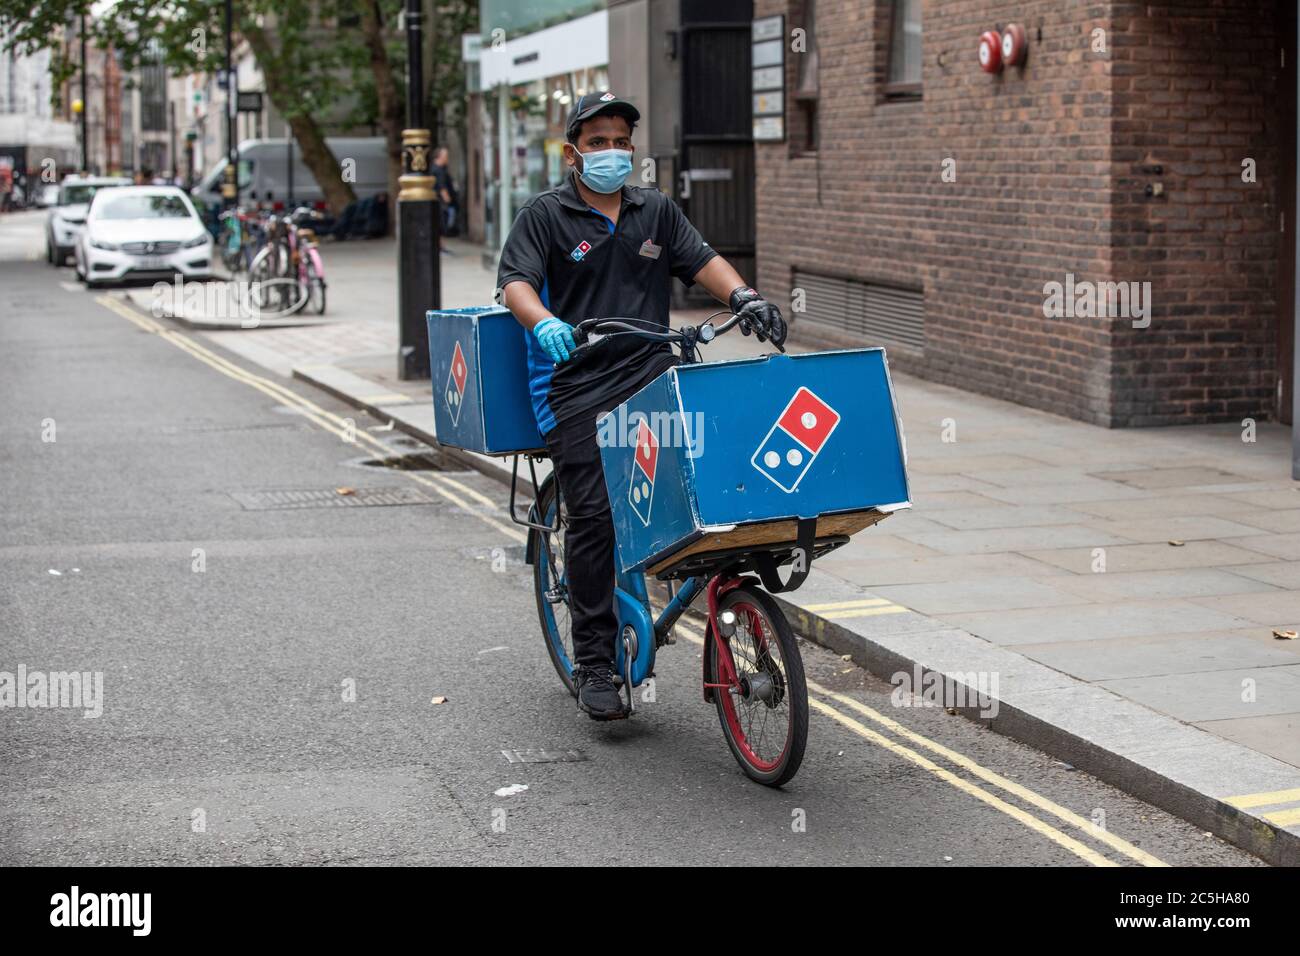 Domino's Pizza livraison cycliste portant un masque facial et des gants de protection pendant son tour dans le centre de Londres, Angleterre, Royaume-Uni Banque D'Images